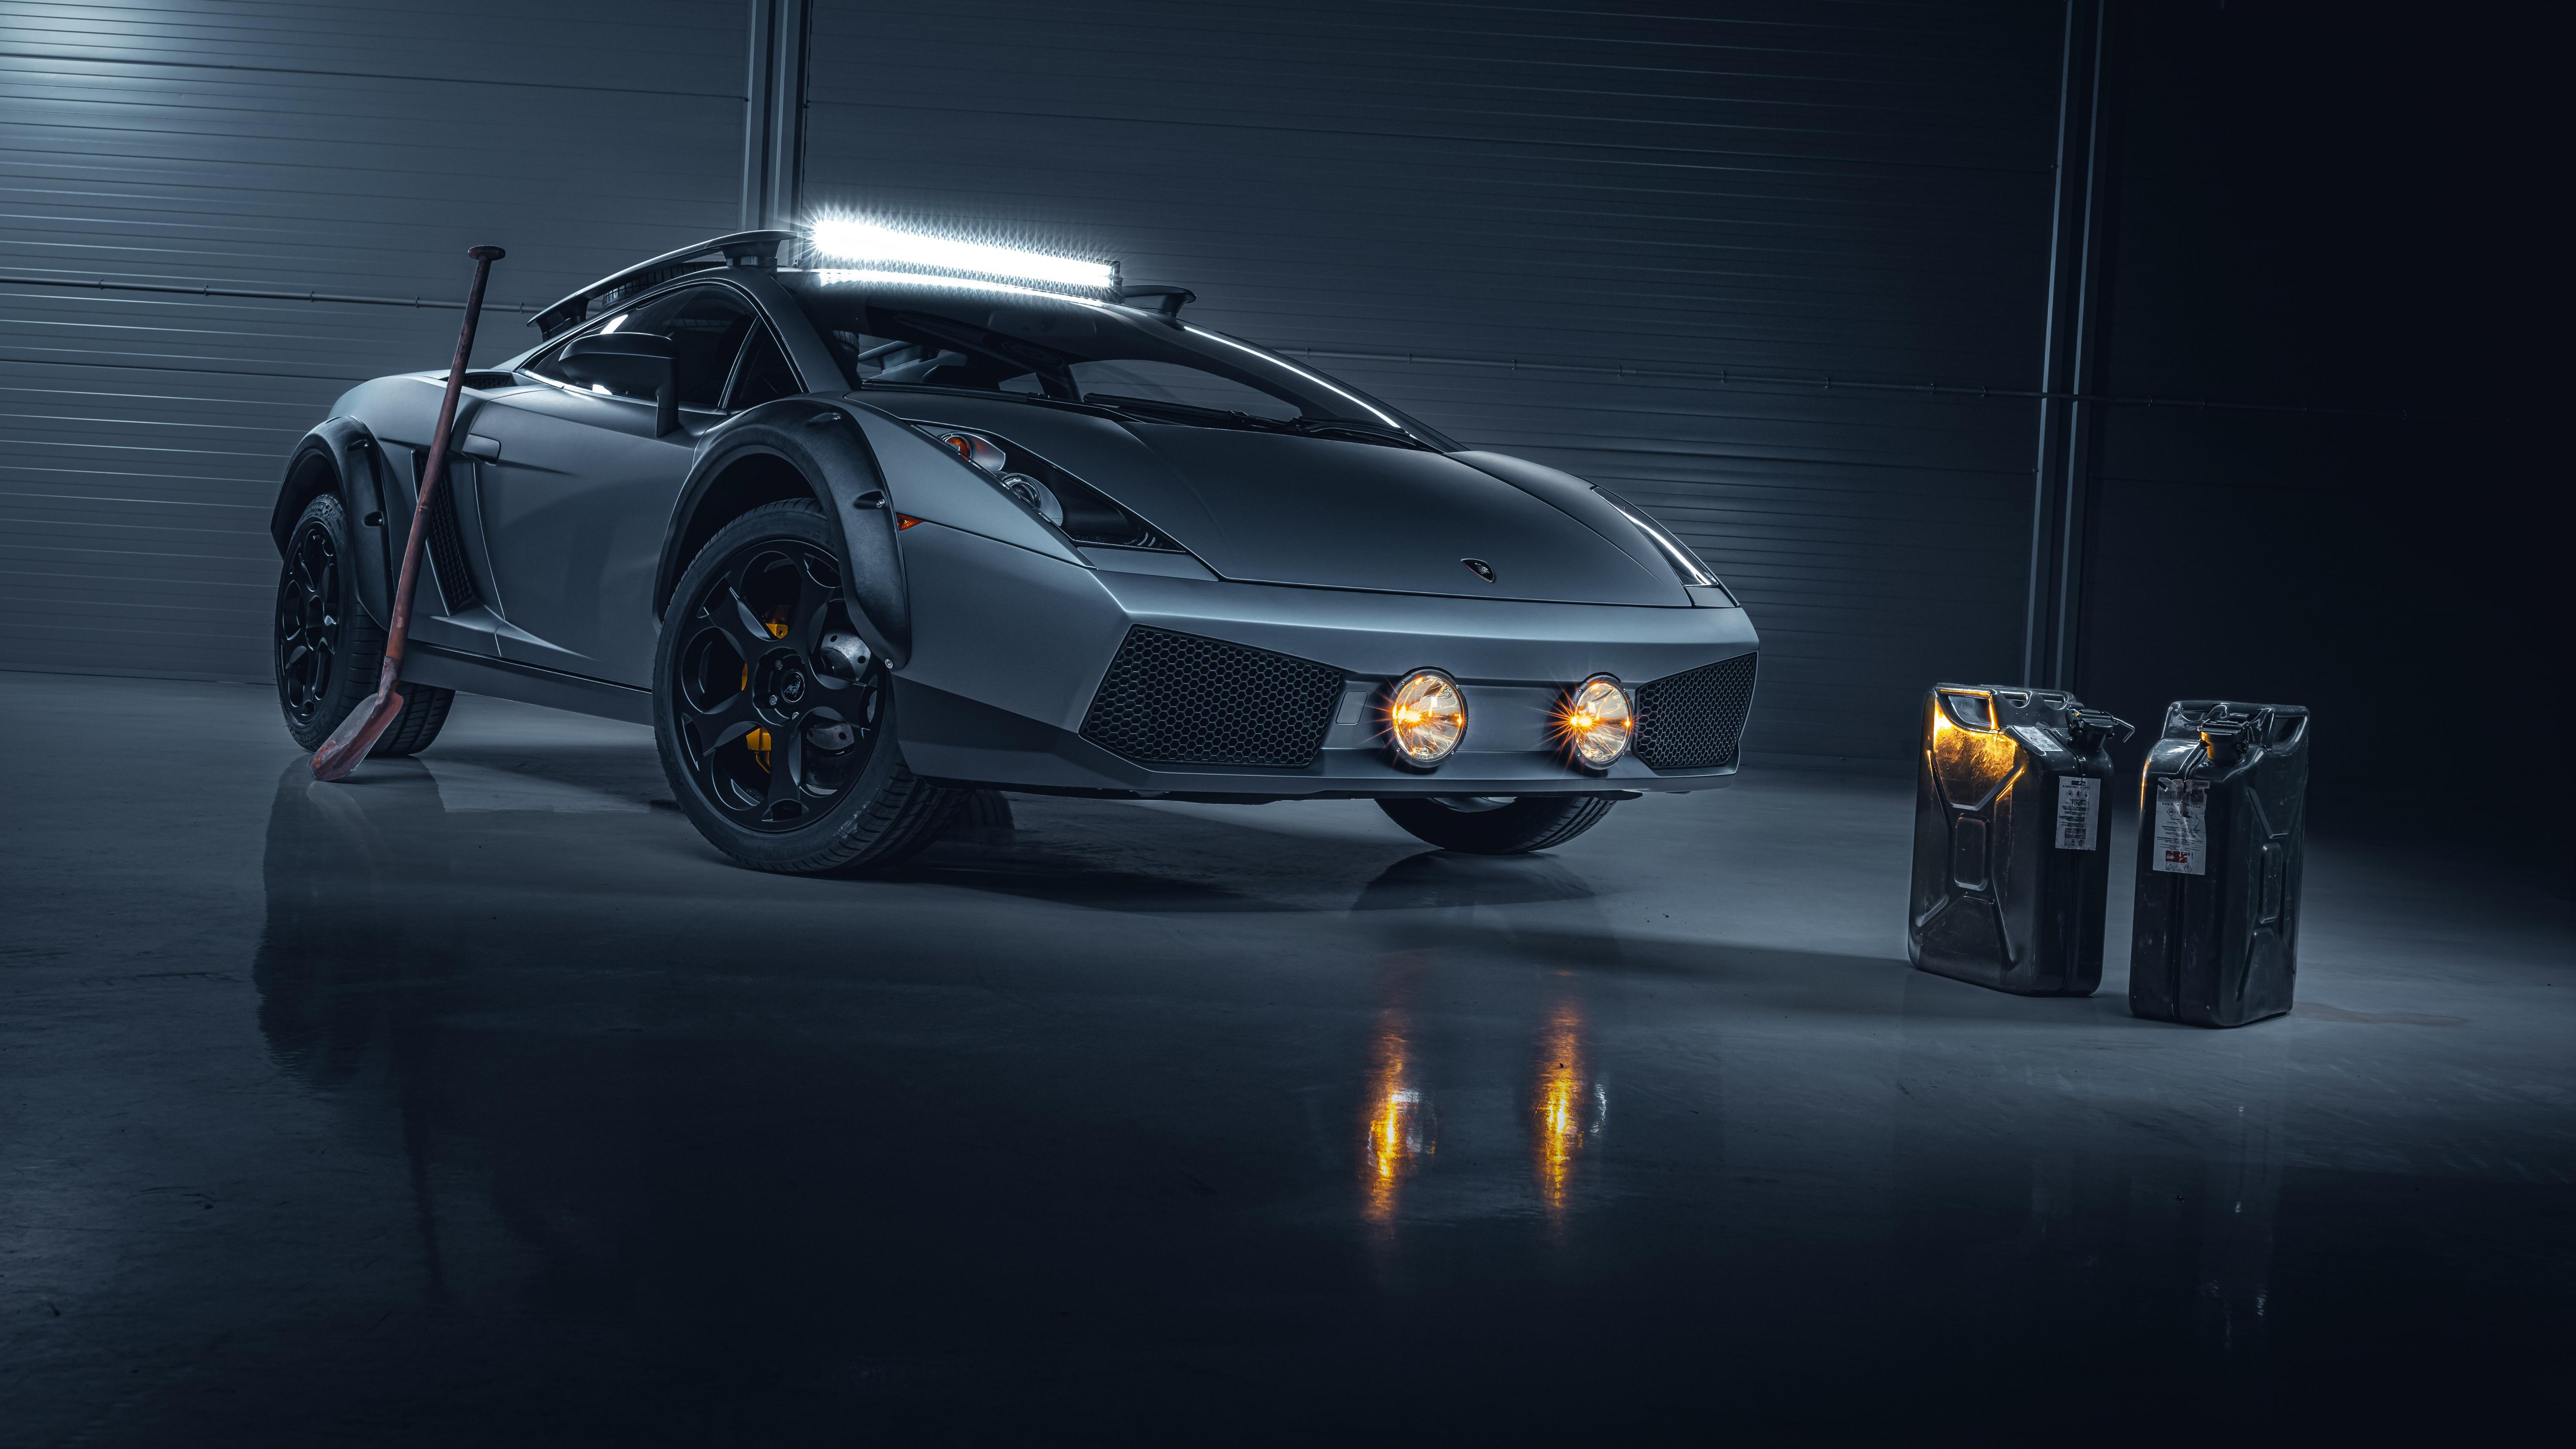 Lamborghini Gallardo Offroad 2019 4K Wallpaper. HD Car